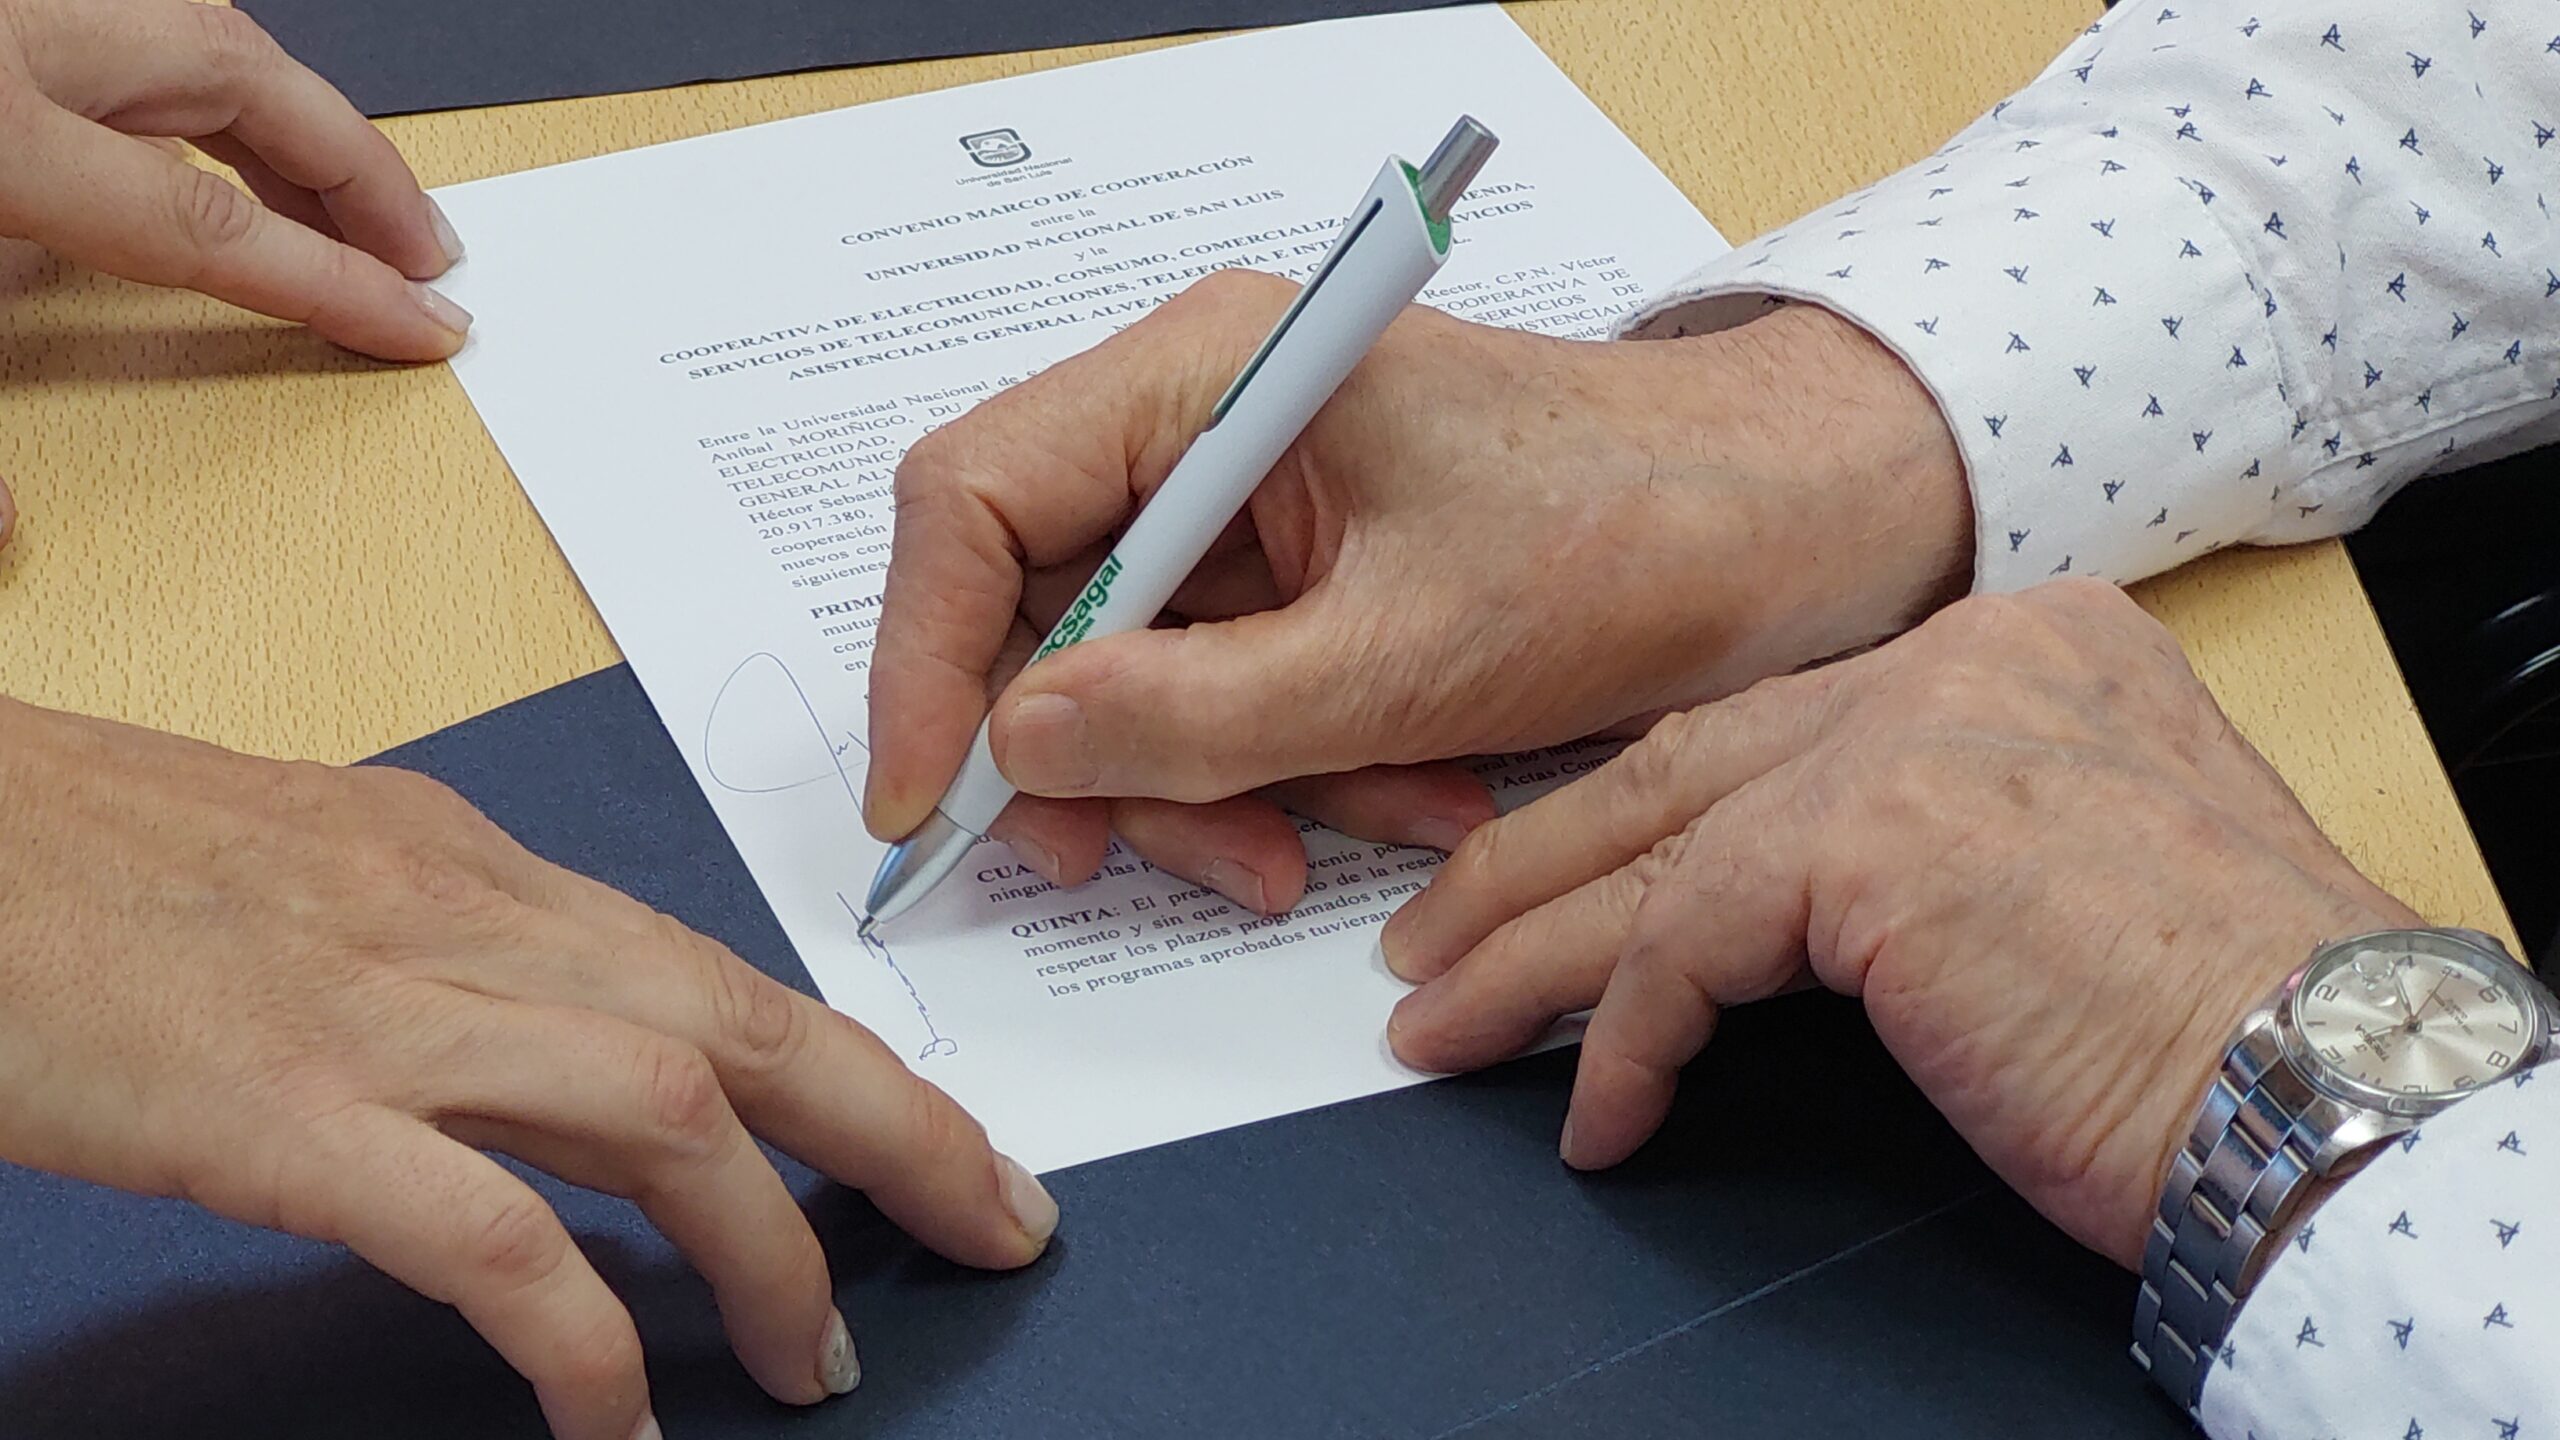 Cecsagal avanza en acciones concretas tras la concreción de la firma del convenio de cooperación mutua con la Universidad Nacional de San Luis